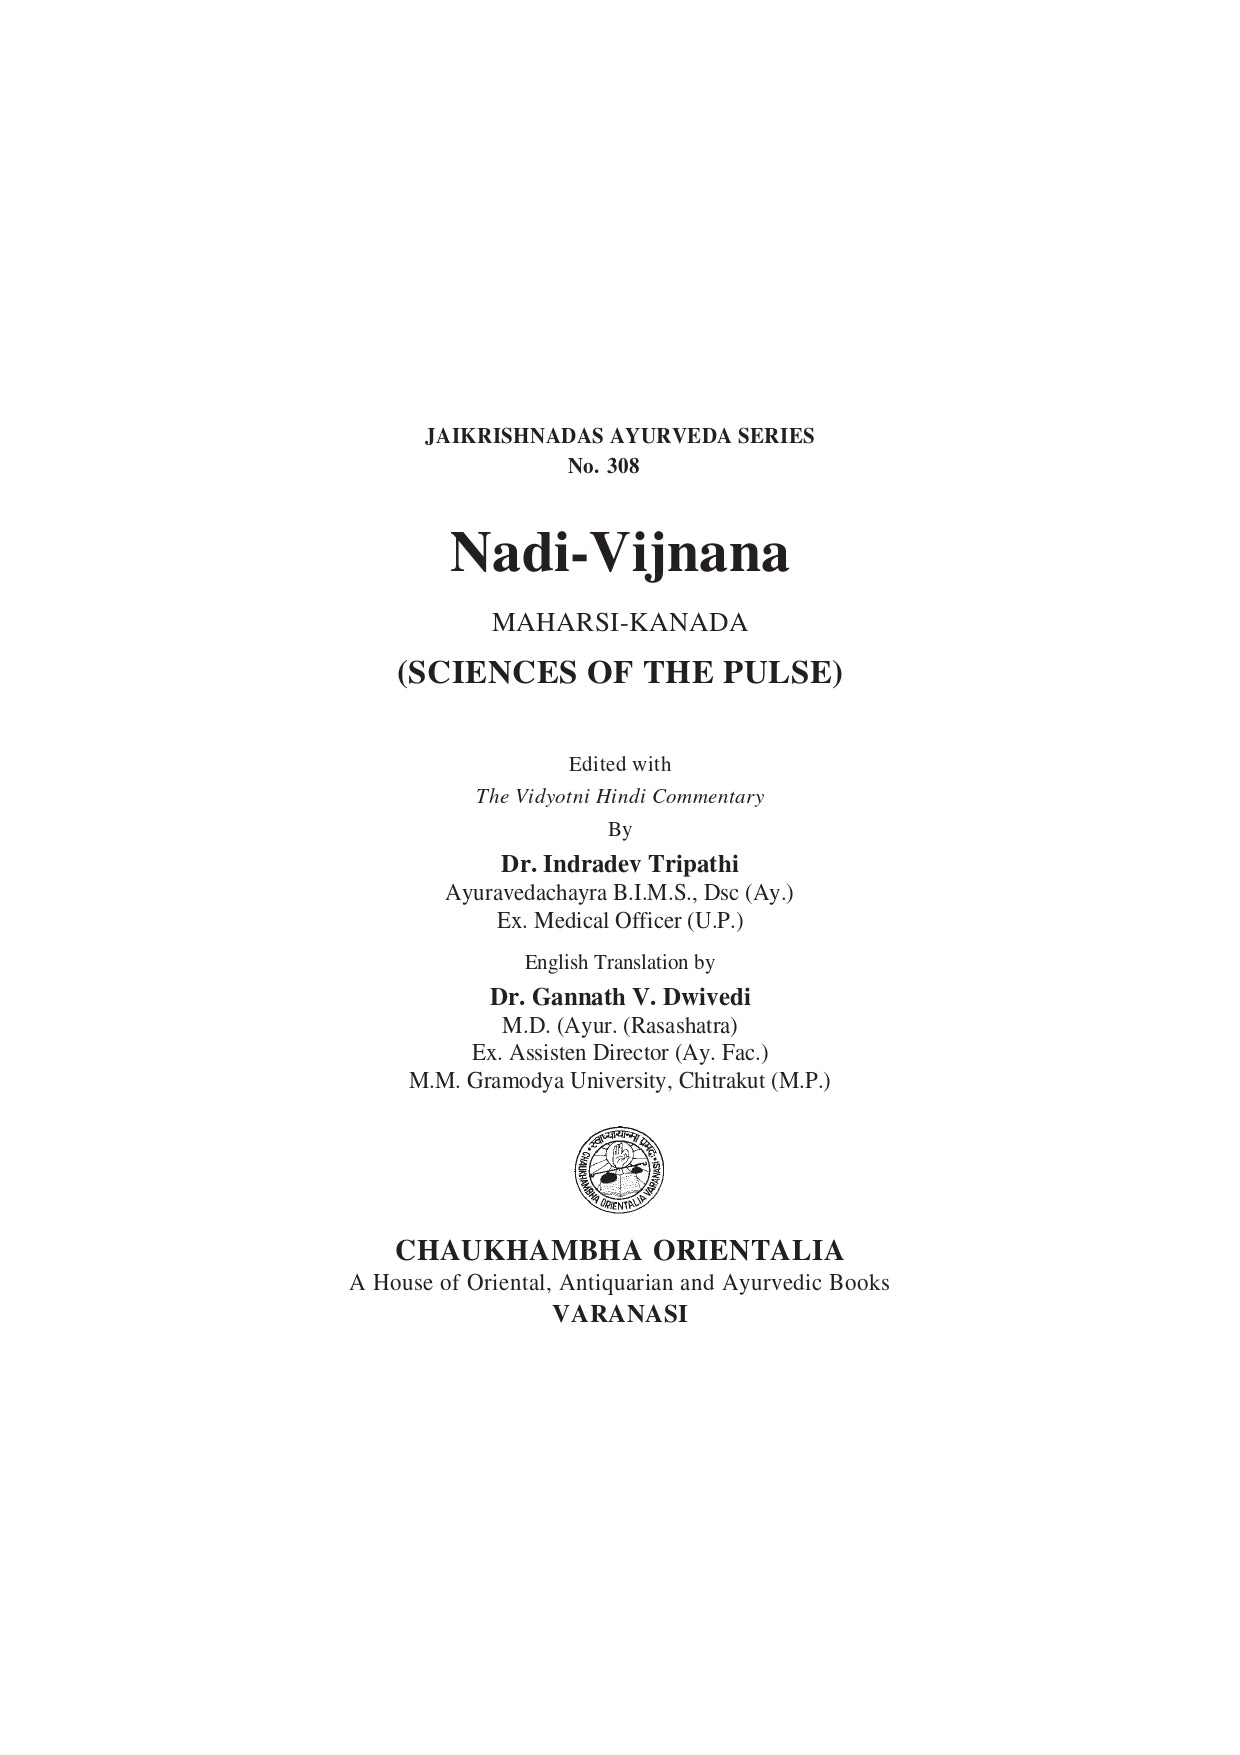 Chaukhambha Orientalia Nadi Vijnana of Maharsi Kanada (Sciences of the Pulse)